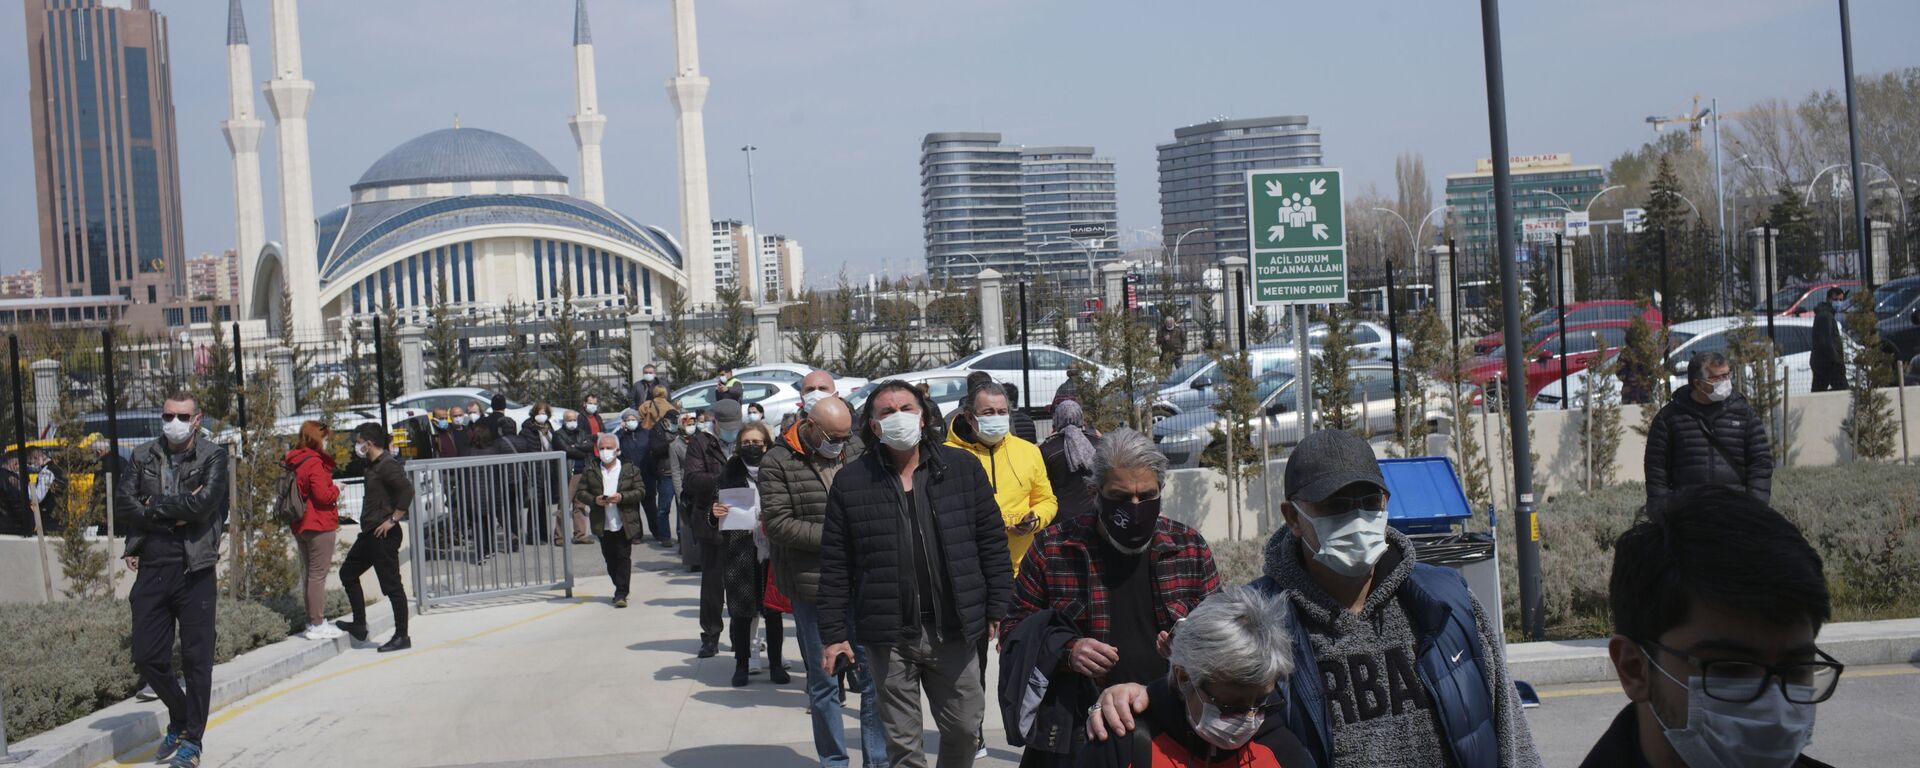 Люди идут в масках на фоне мечети в Анкаре, Турция - Sputnik Грузия, 1920, 06.04.2021